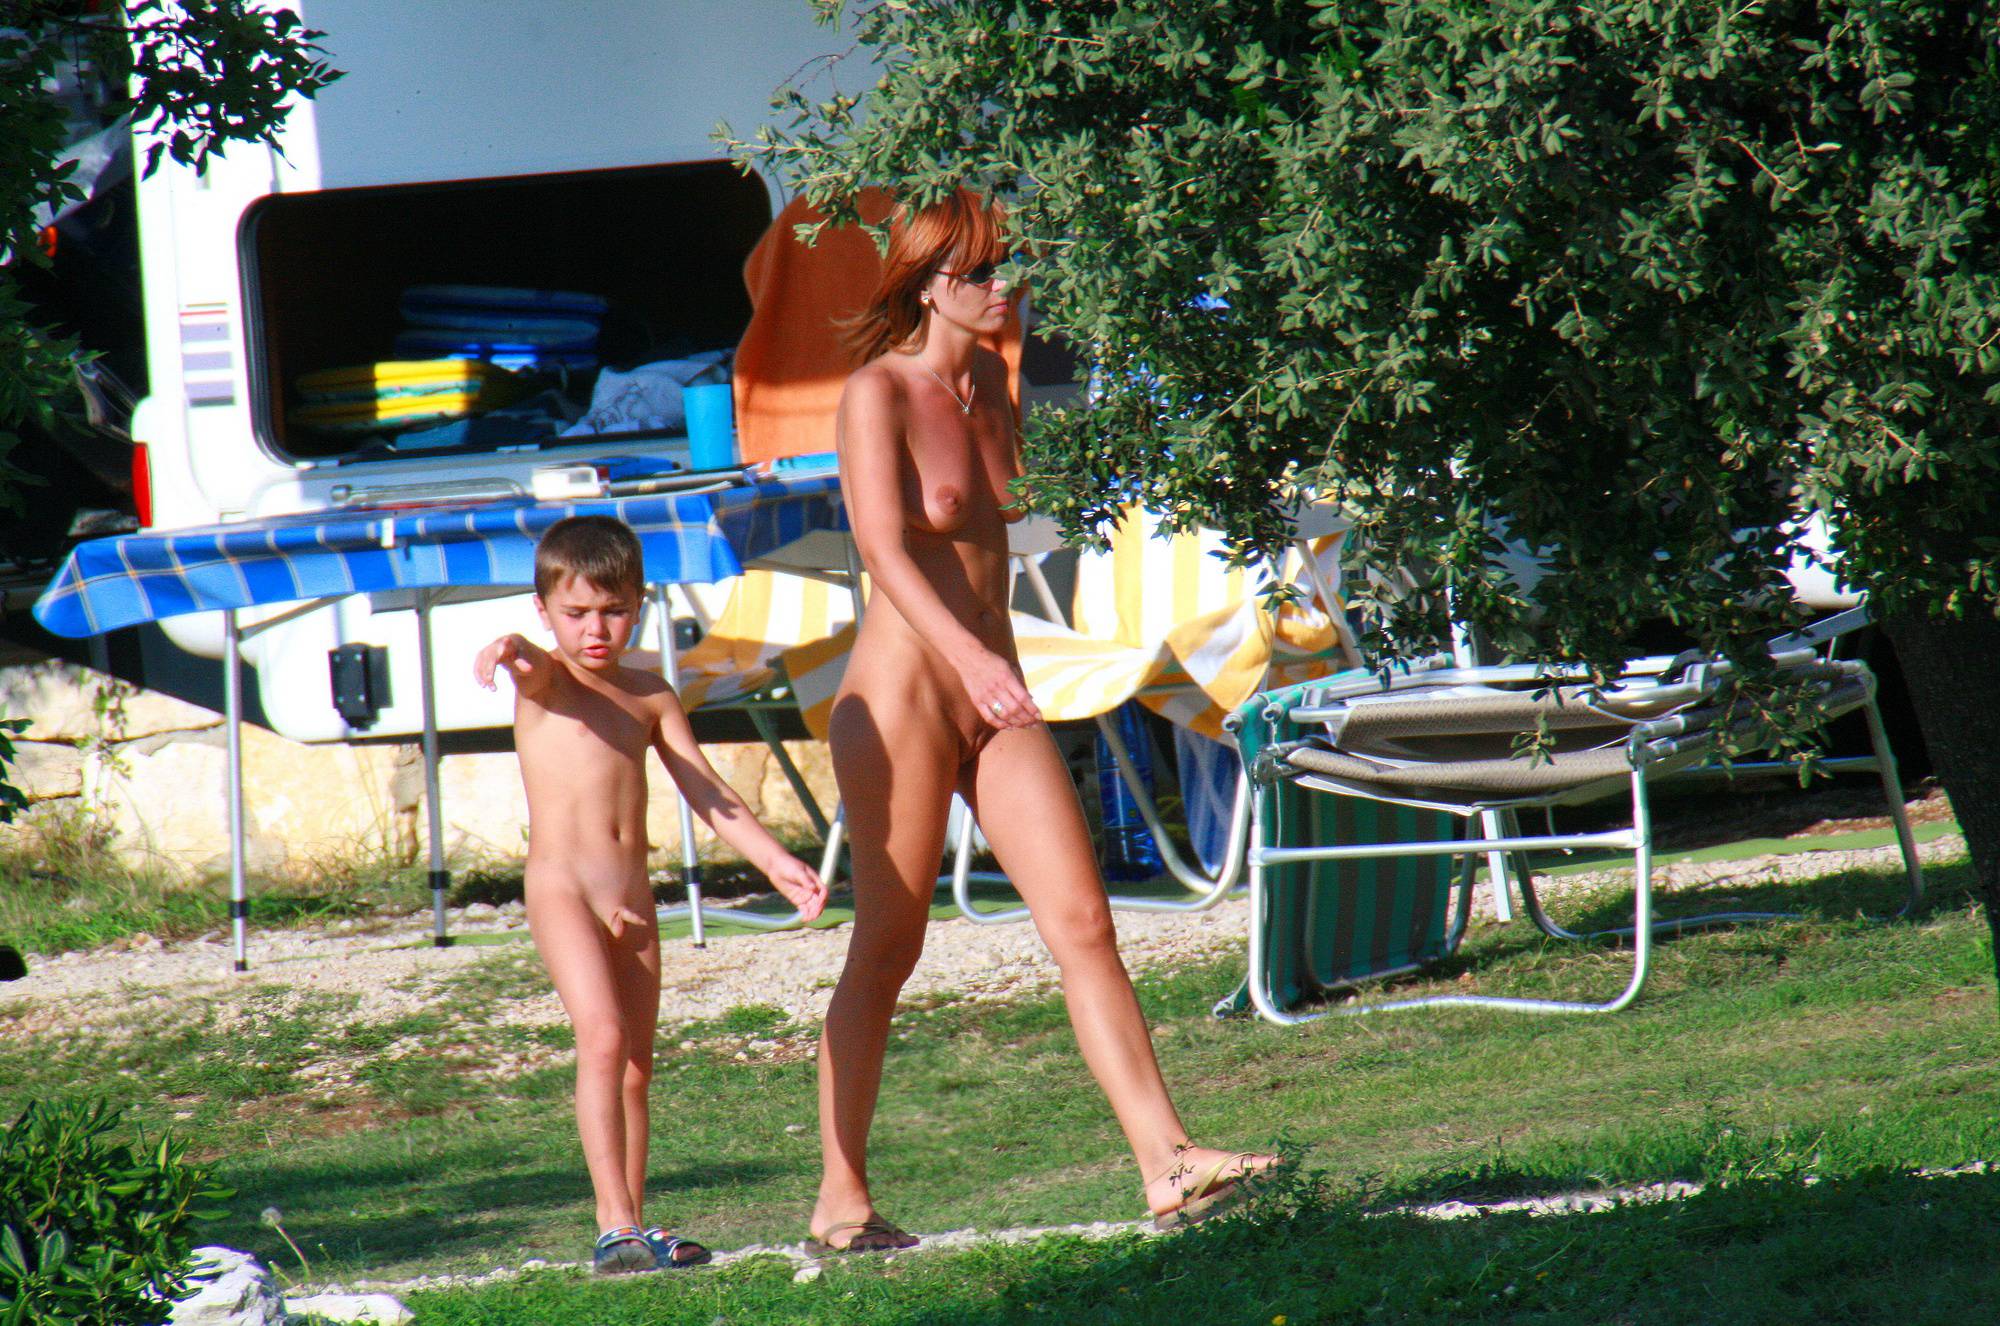 Nudist Photos Uka FKK Park Parenting - 1